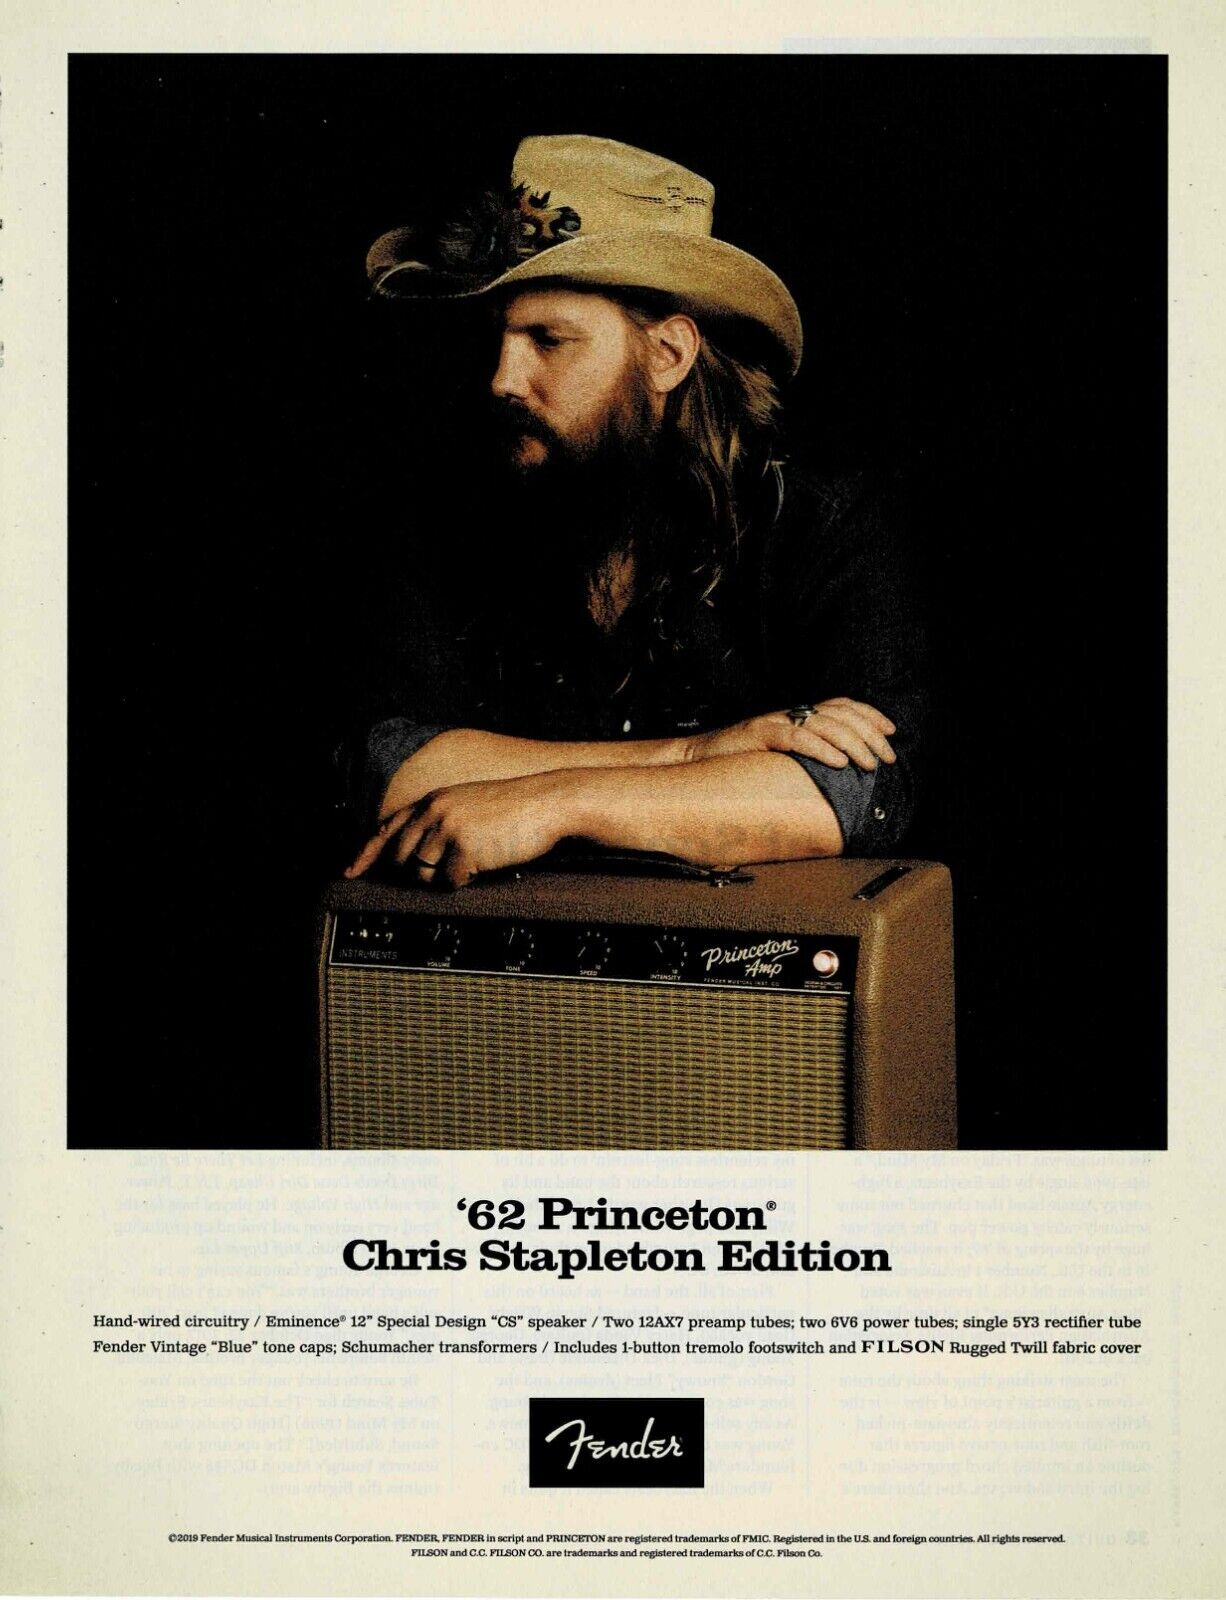 CHRIS STAPLETON - FENDER AMPS - 2019 Print Advertisement